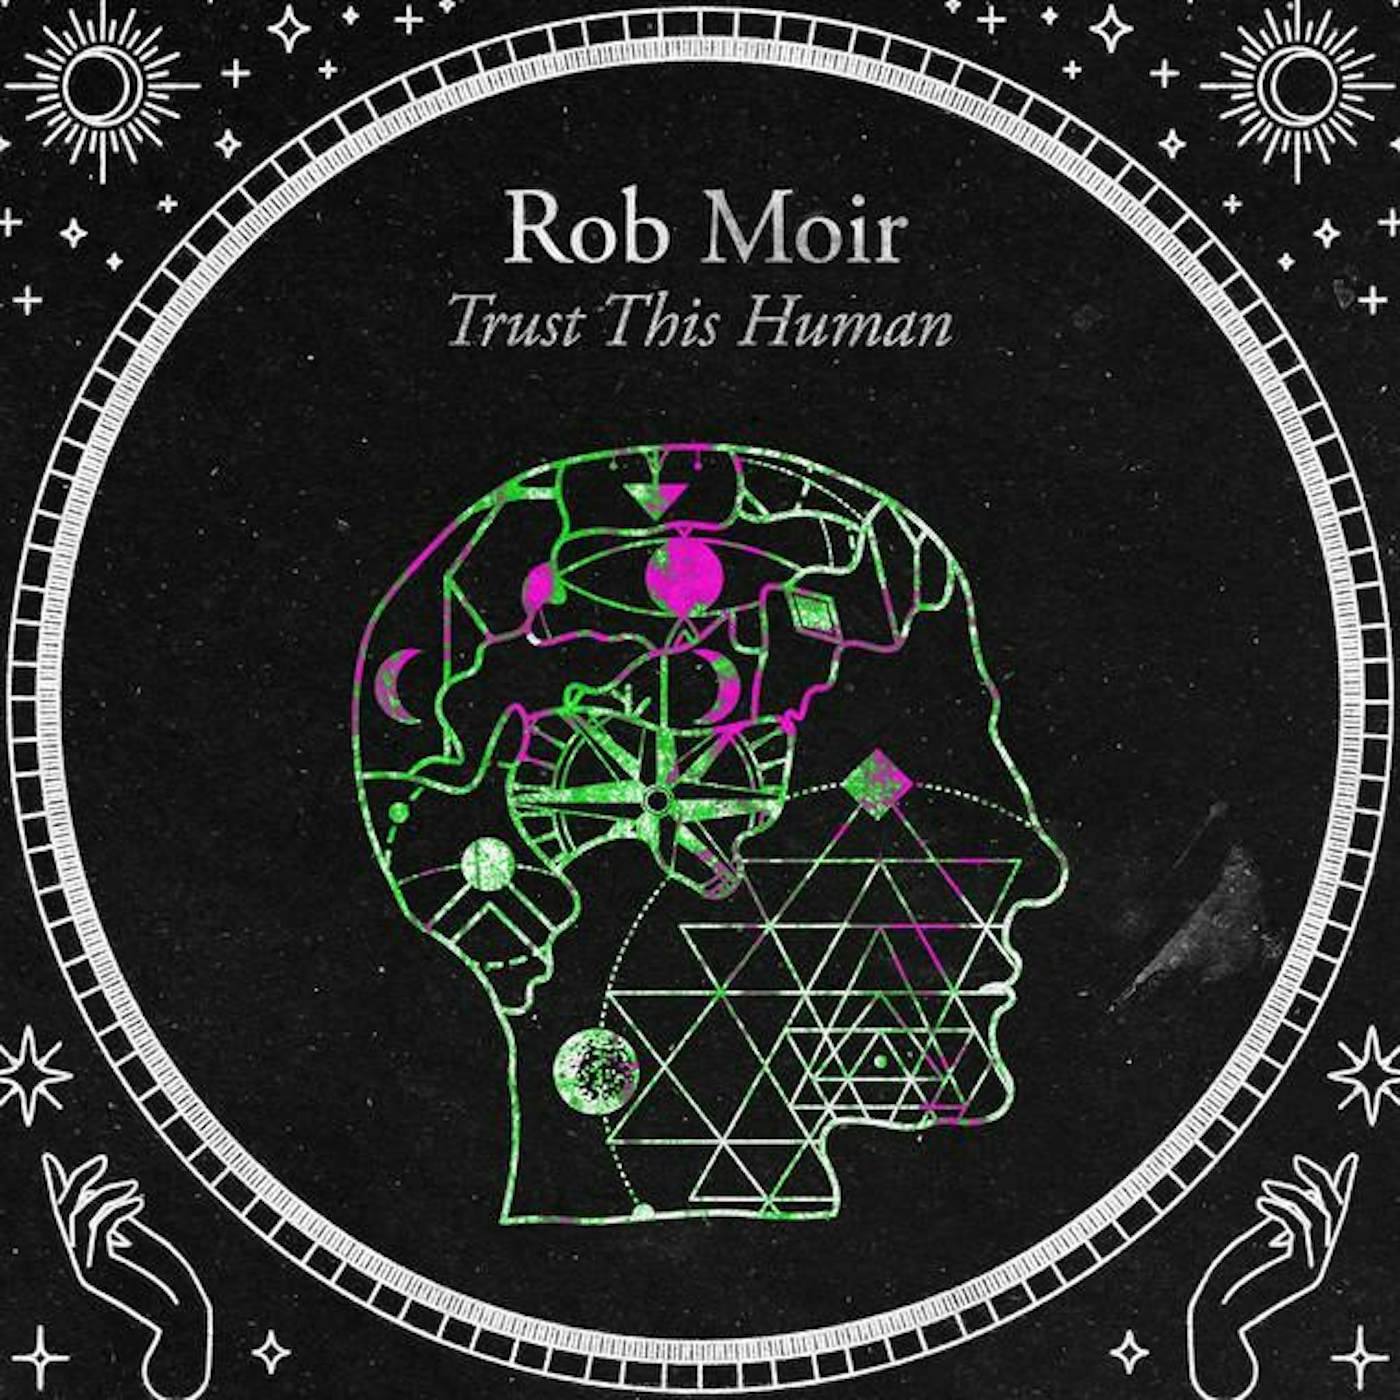 Rob Moir